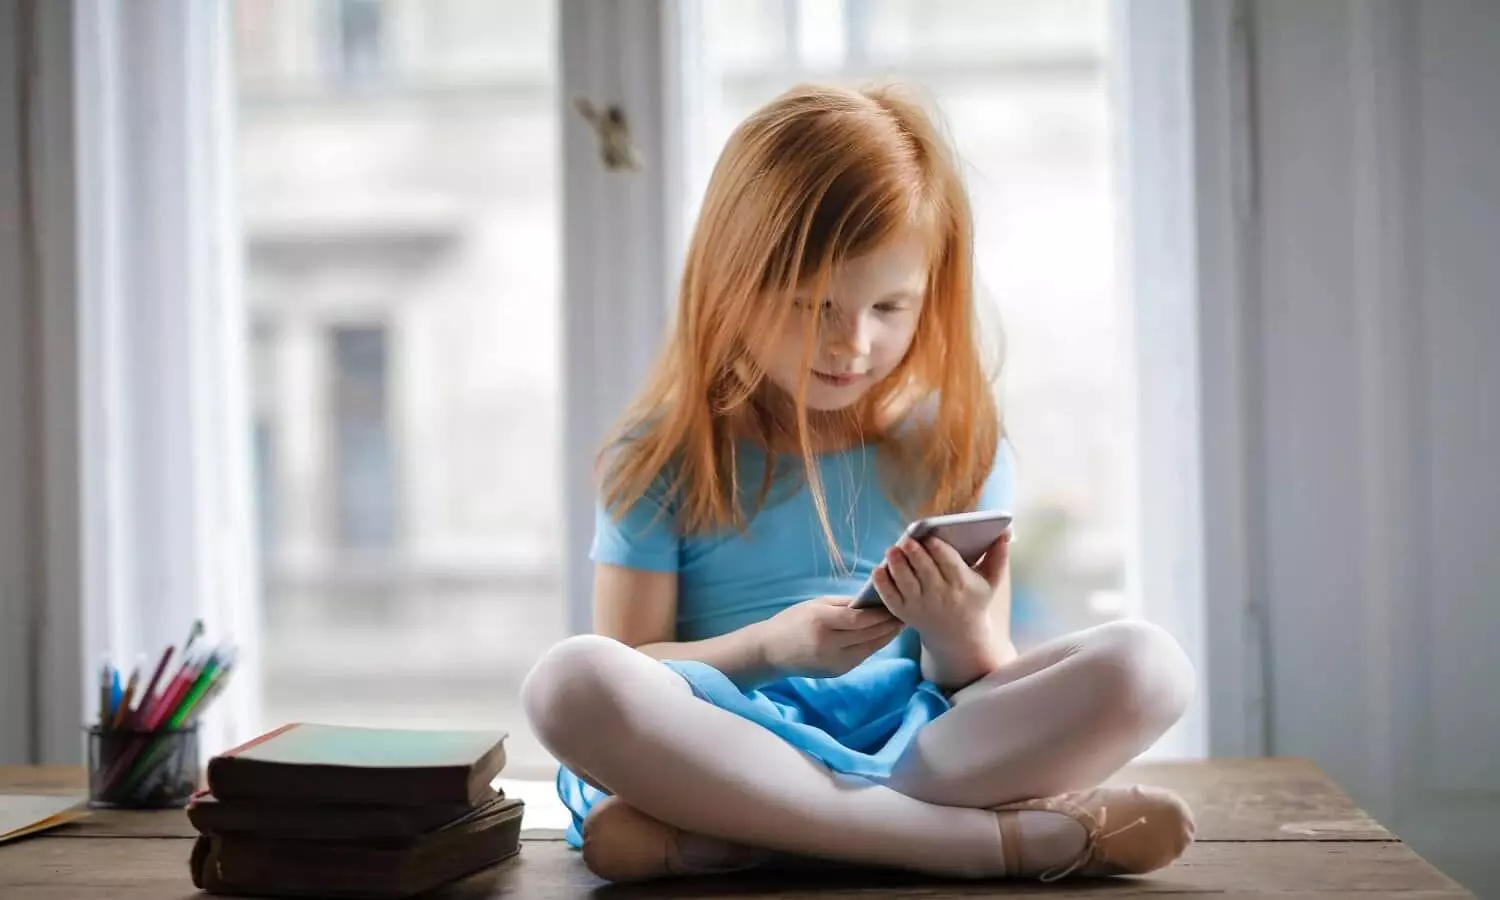 Kids Smartphone Addiction: बच्चों की मोबाइल की लत कैसे छुड़ाएं